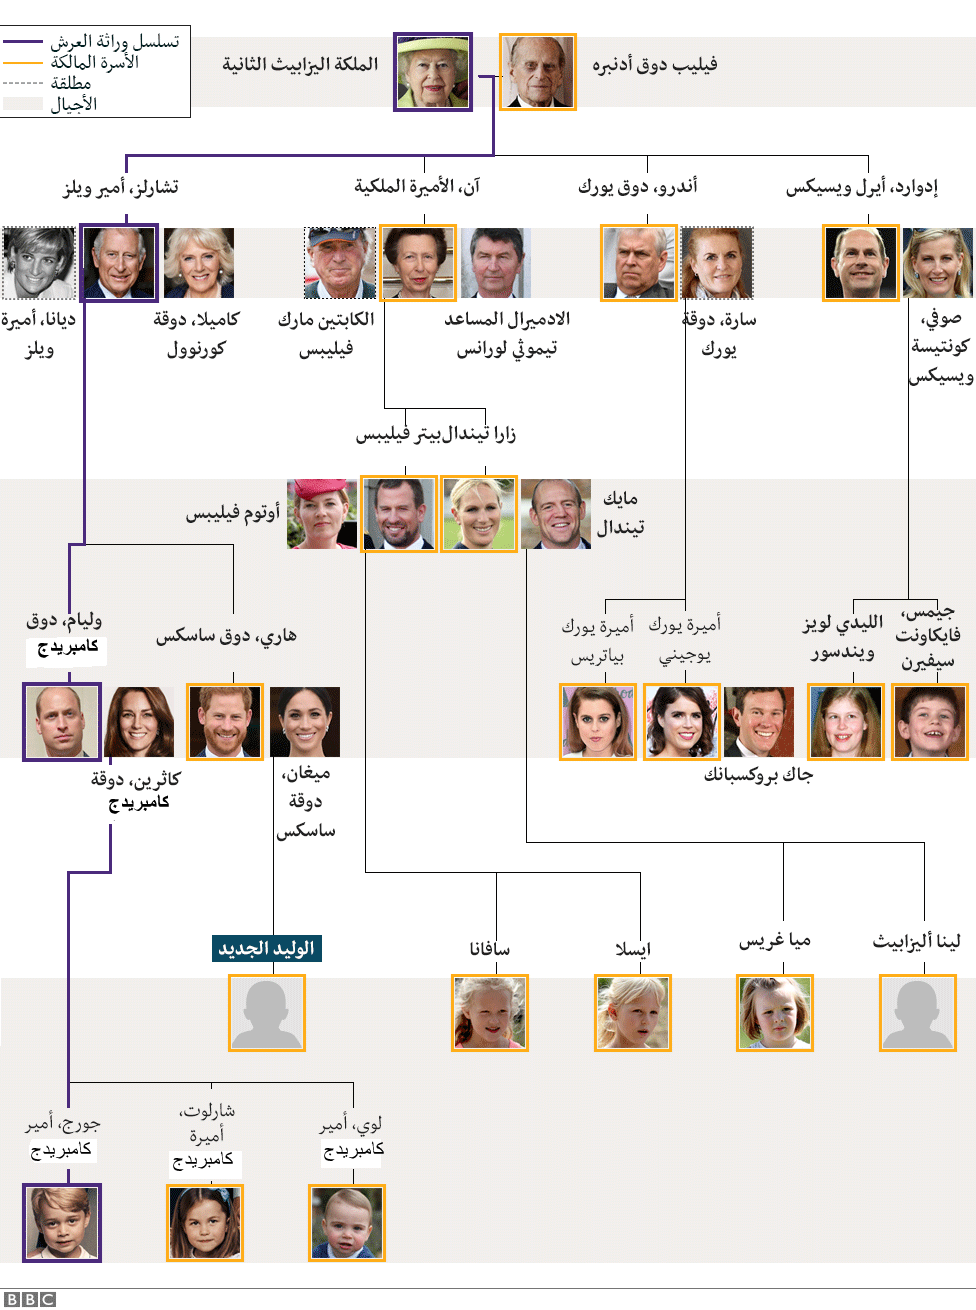 شجرة العائلة المالكة في بريطانيا وتسلسل وراثة العرش Bbc News عربي